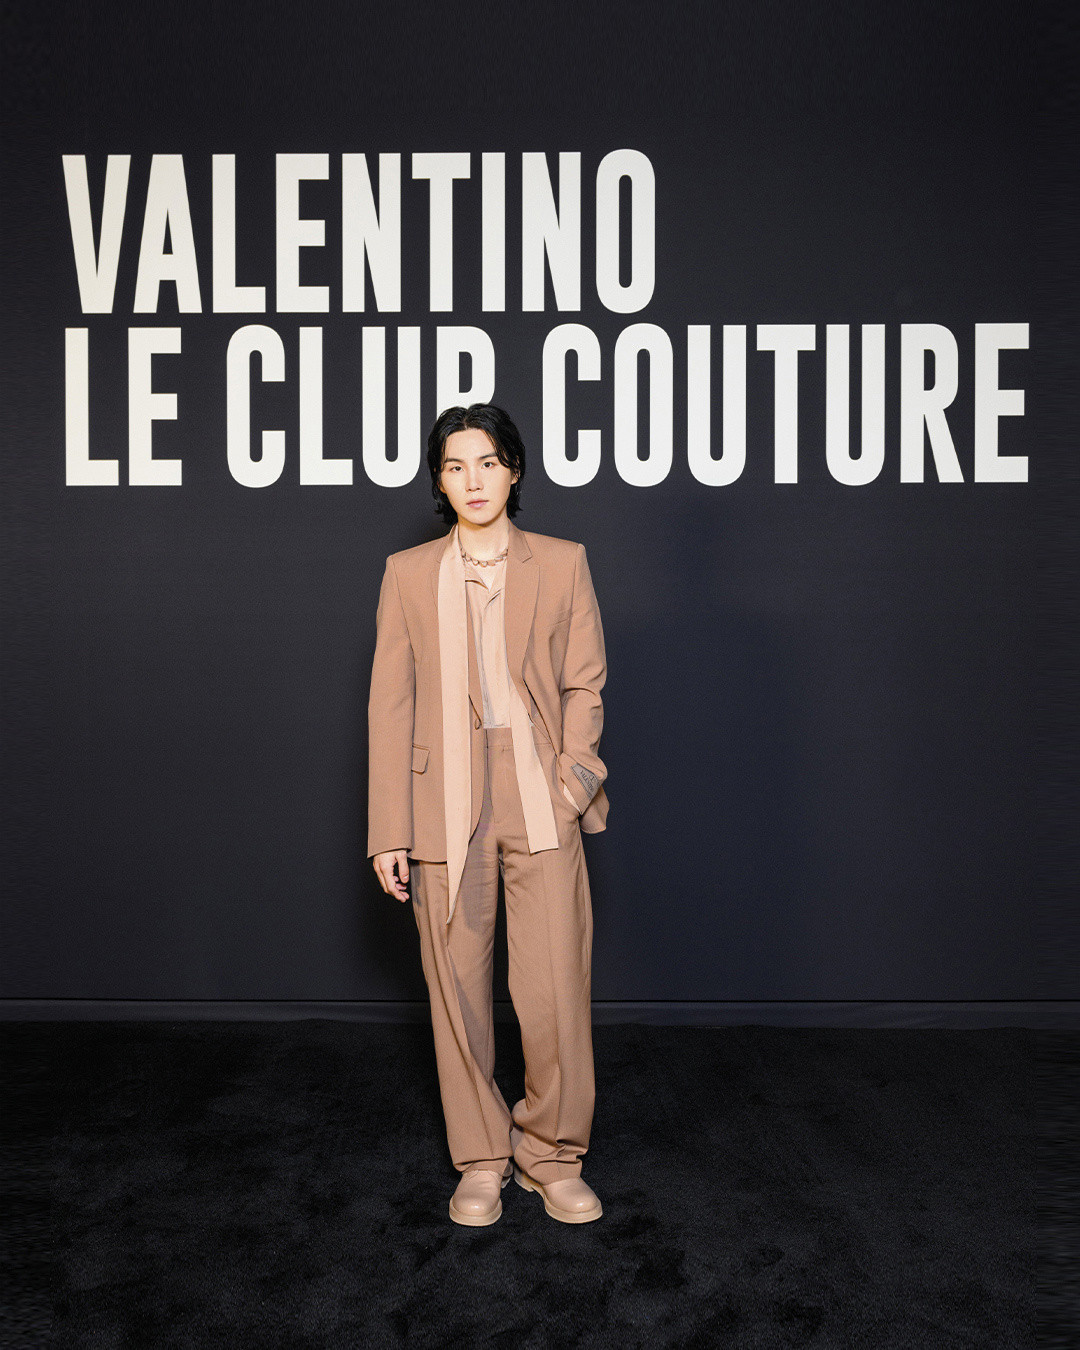 Suga has been made a global brand ambassador at Valentino